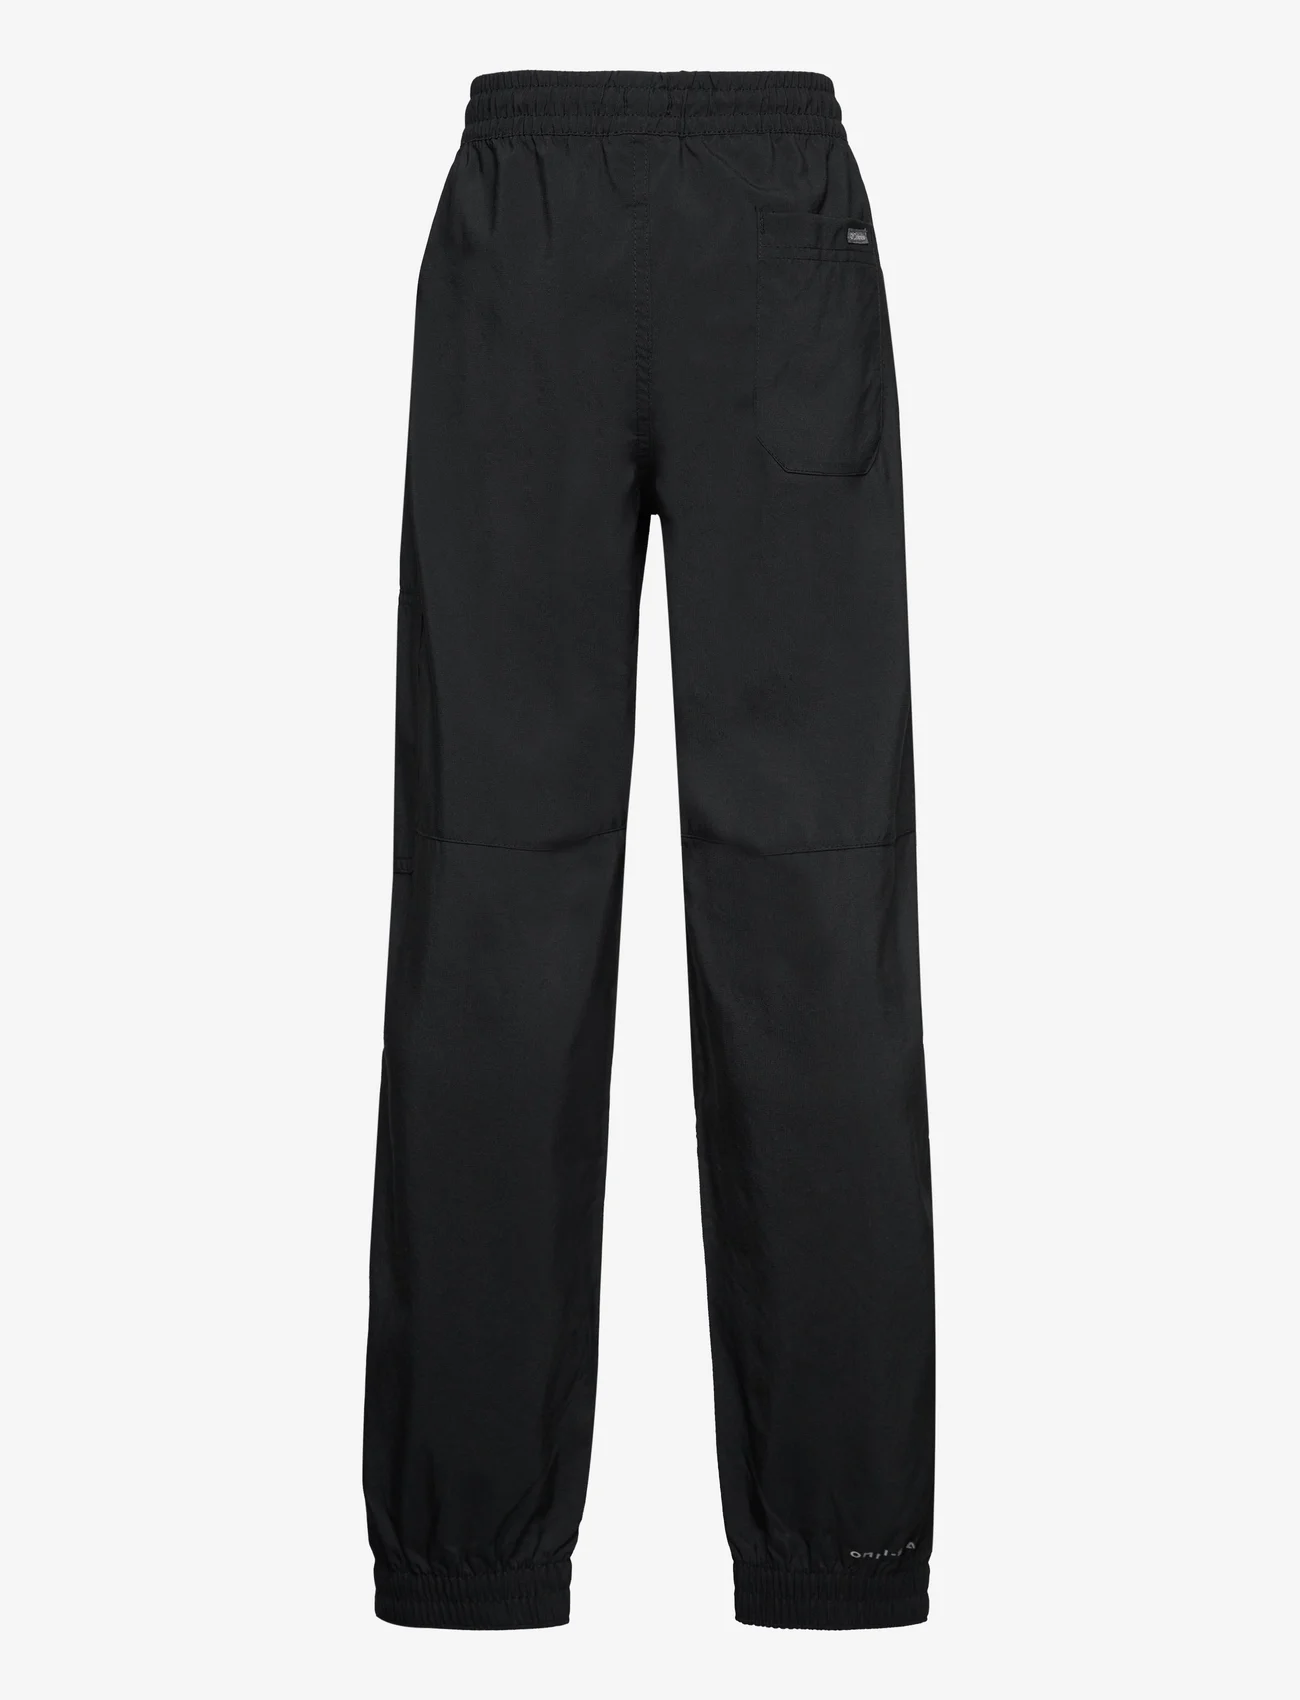 Columbia Sportswear - Silver Ridge Utility Cargo Pant - lauko kelnės - black - 1